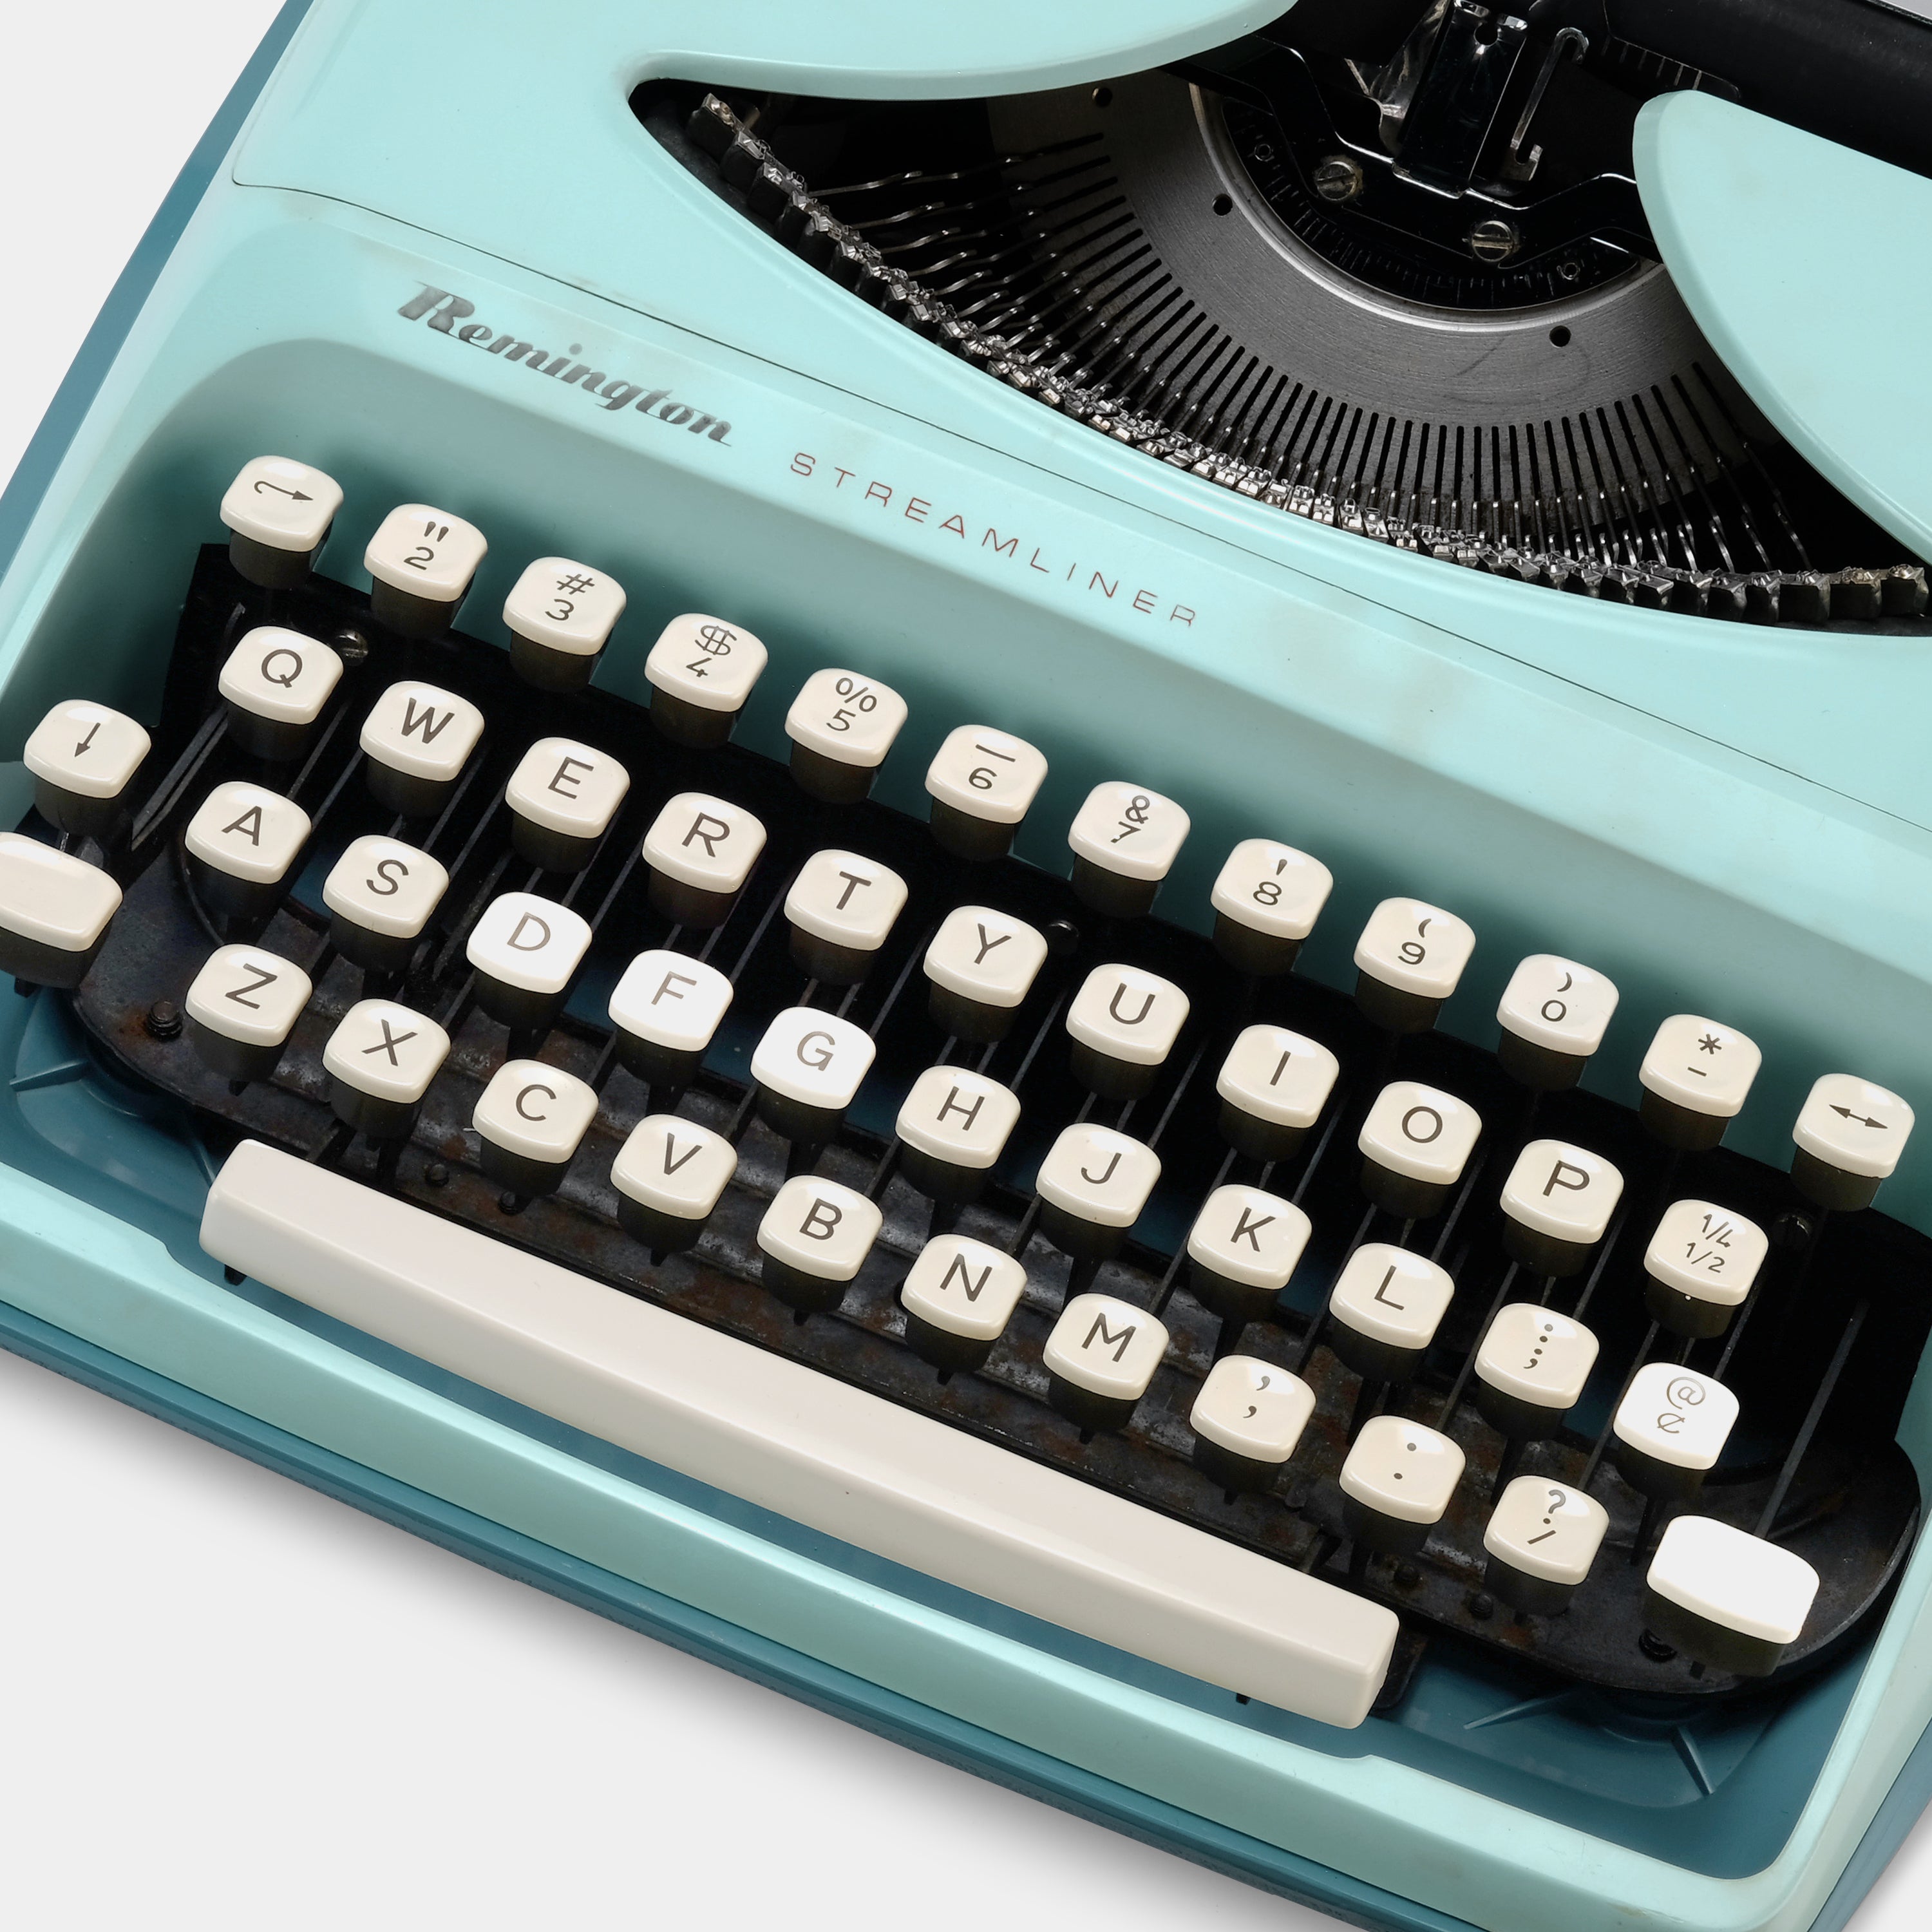 Remington Streamliner Teal Manual Typewriter and Case